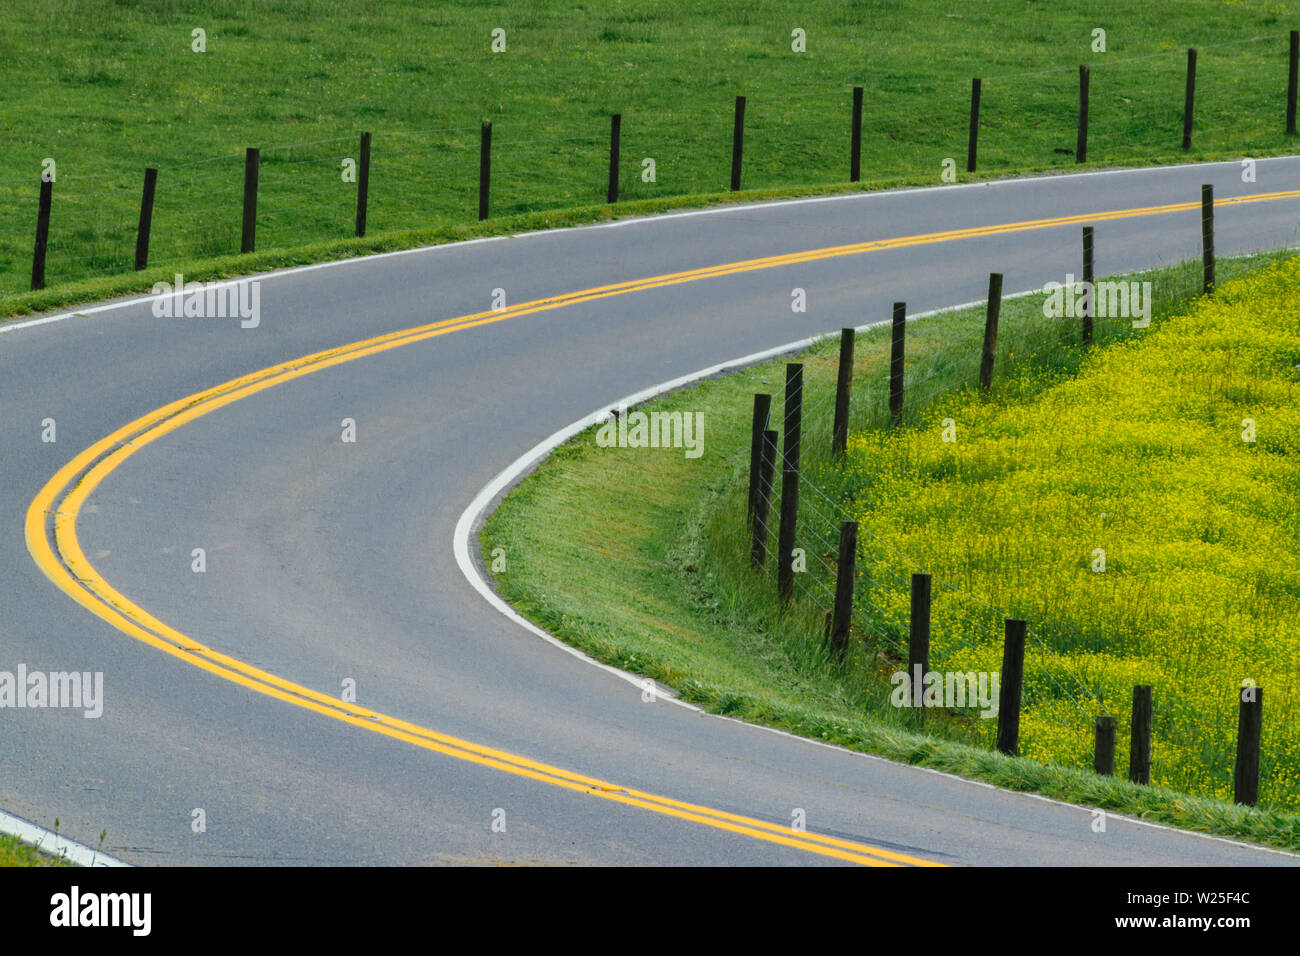 Un arc légèrement courbe d'une route qui passe à travers un pâturage vert et jaune. Banque D'Images